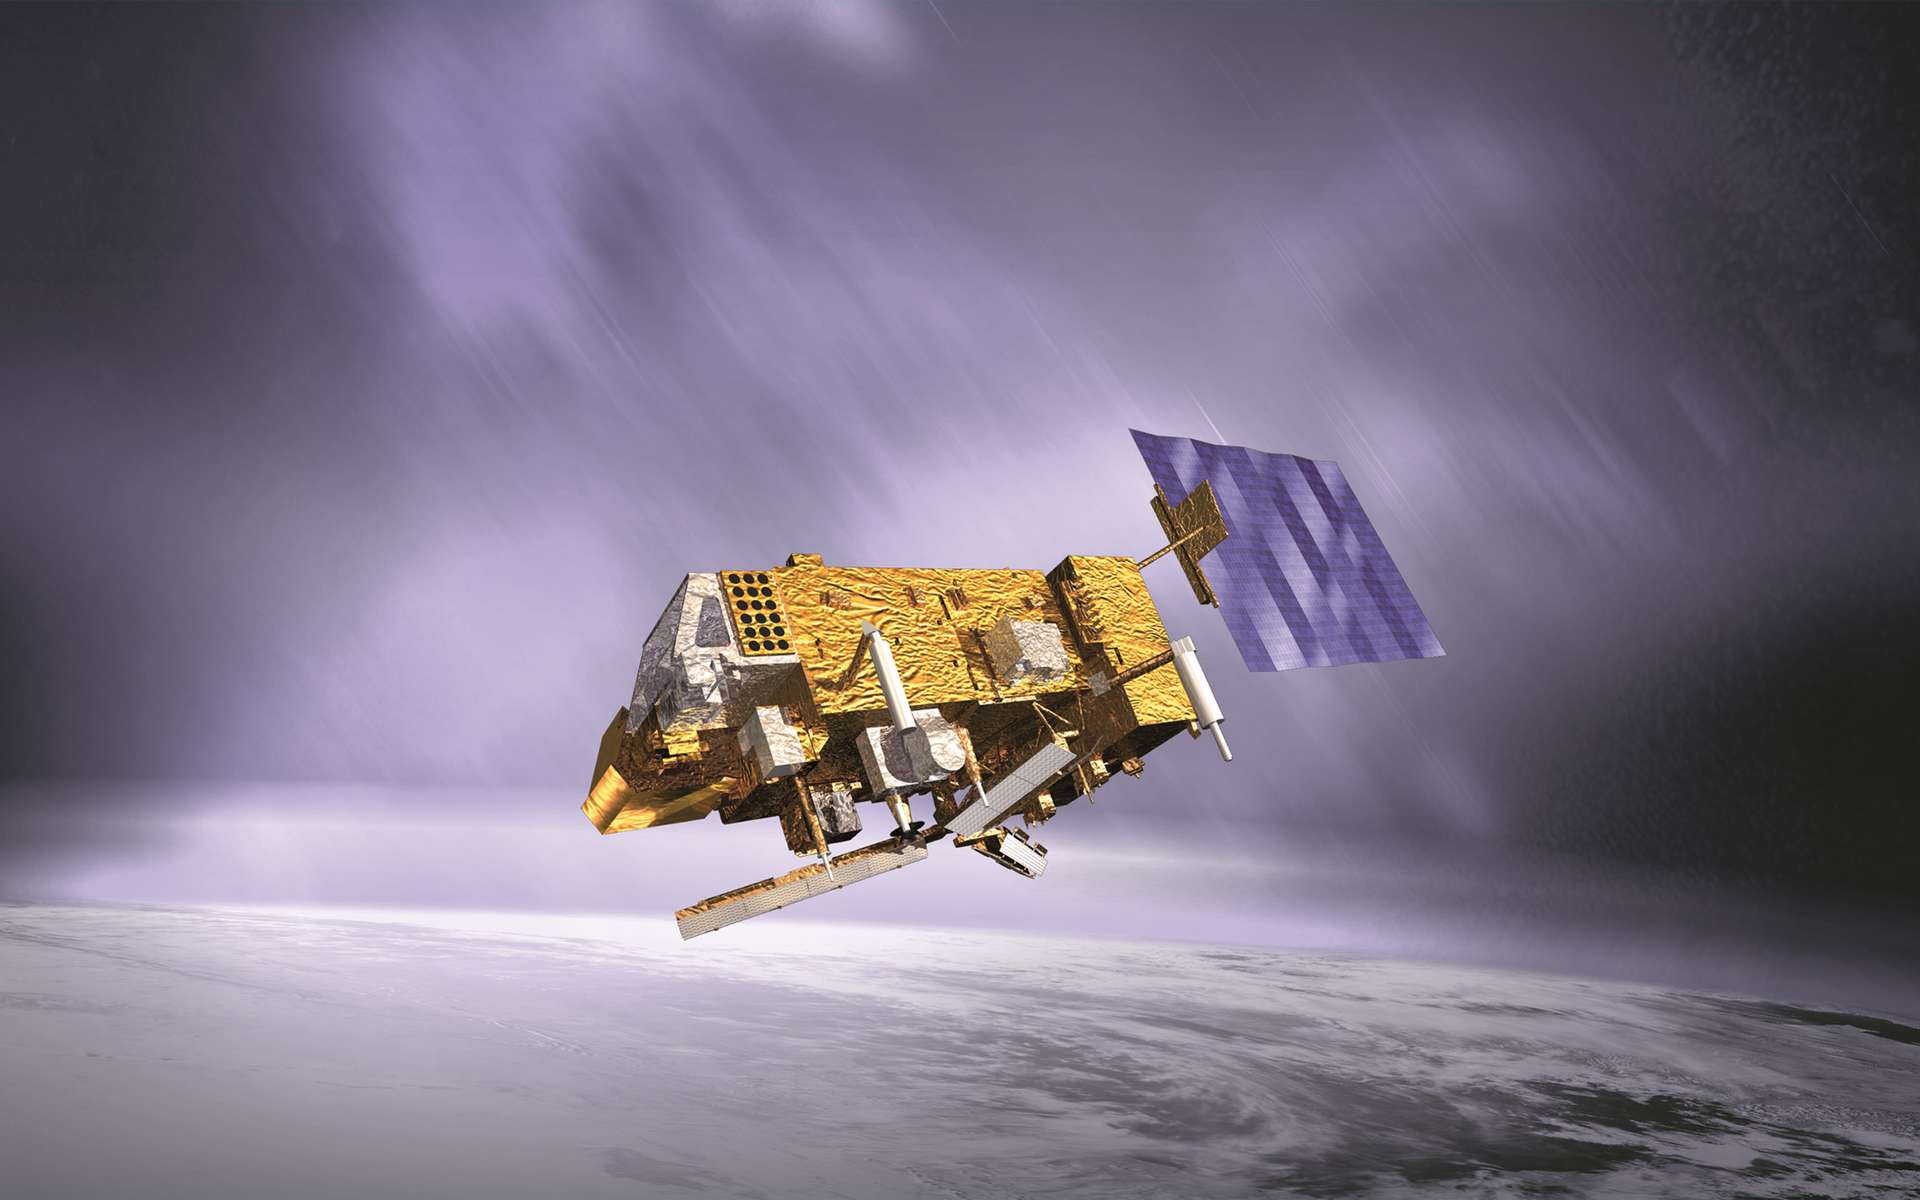 Depuis son lancement il y a 10 ans, le satellite MetOp-A a fait près de 52.000 fois le tour de la Terre, transmis plus de 100 téraoctets de données météorologiques et climatiques 24 heures sur 24 et 7 jours sur 7. © ESA, Eumetsat